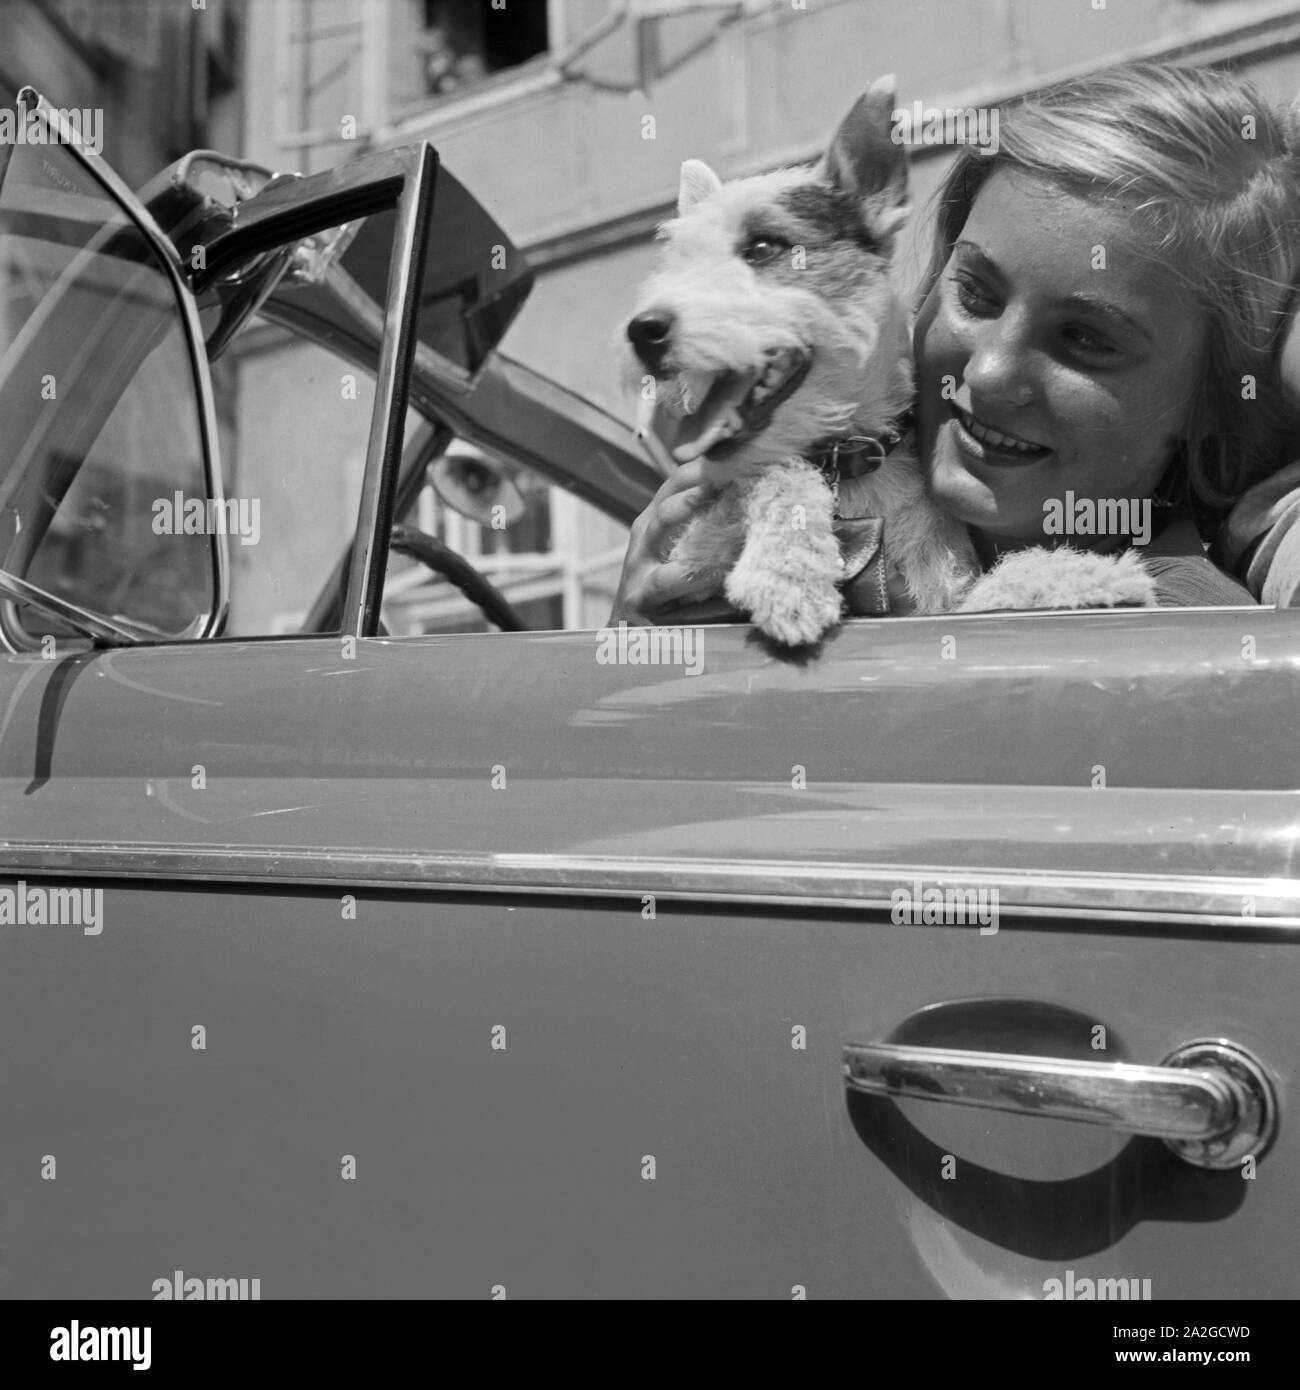 Eine junge Frau und ein kleiner Foxterrier am Steuer eines Opel Blitz, Österreich 1930er Jahre. A young woman and a fox terrier at the steering wheel of an Opel Blitz, Austria 1930s. Stock Photo